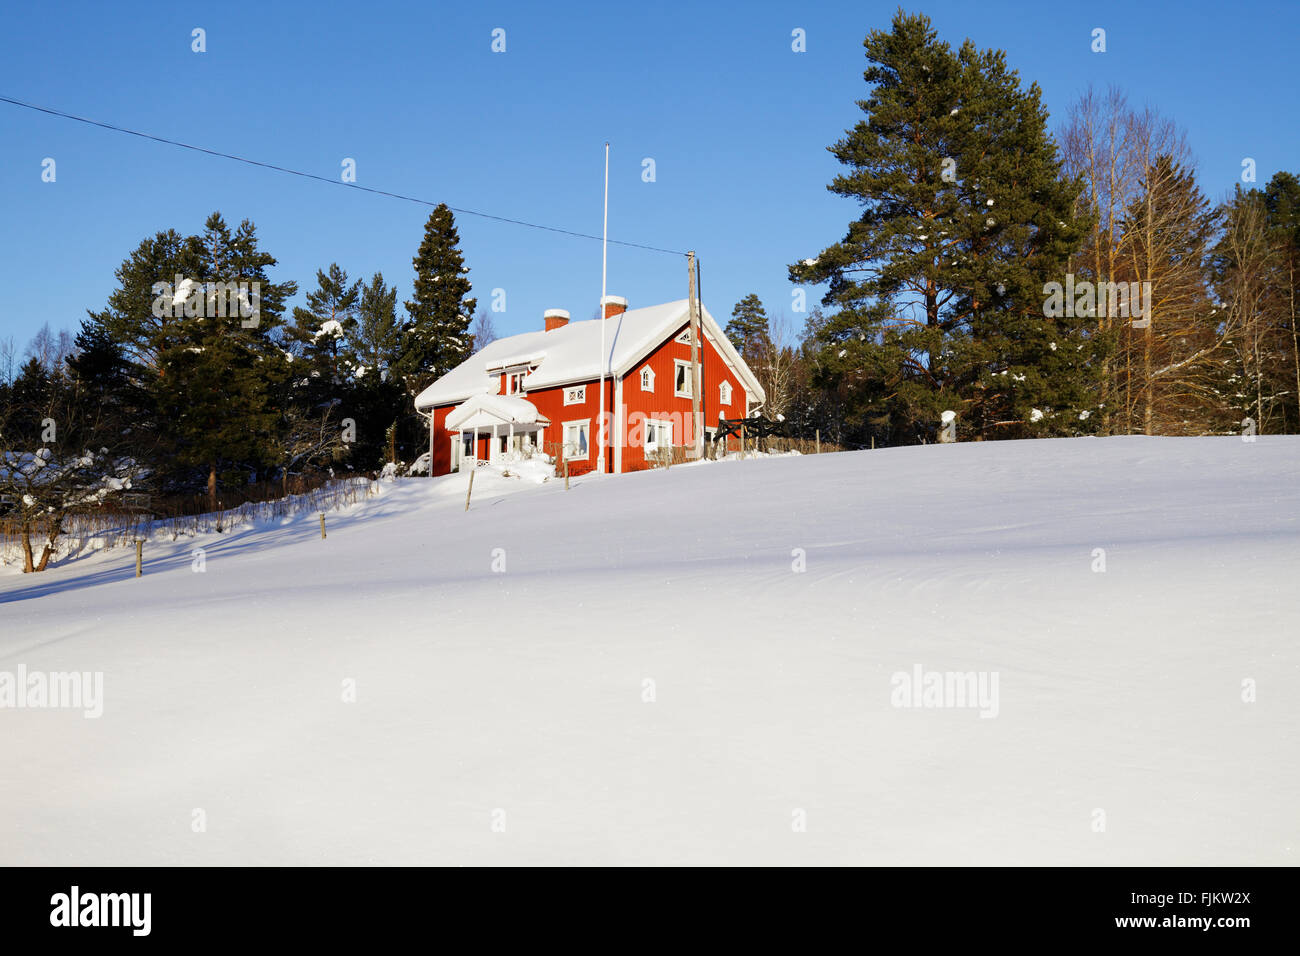 Old Red cottage dans un paysage d'hiver enneigé Banque D'Images